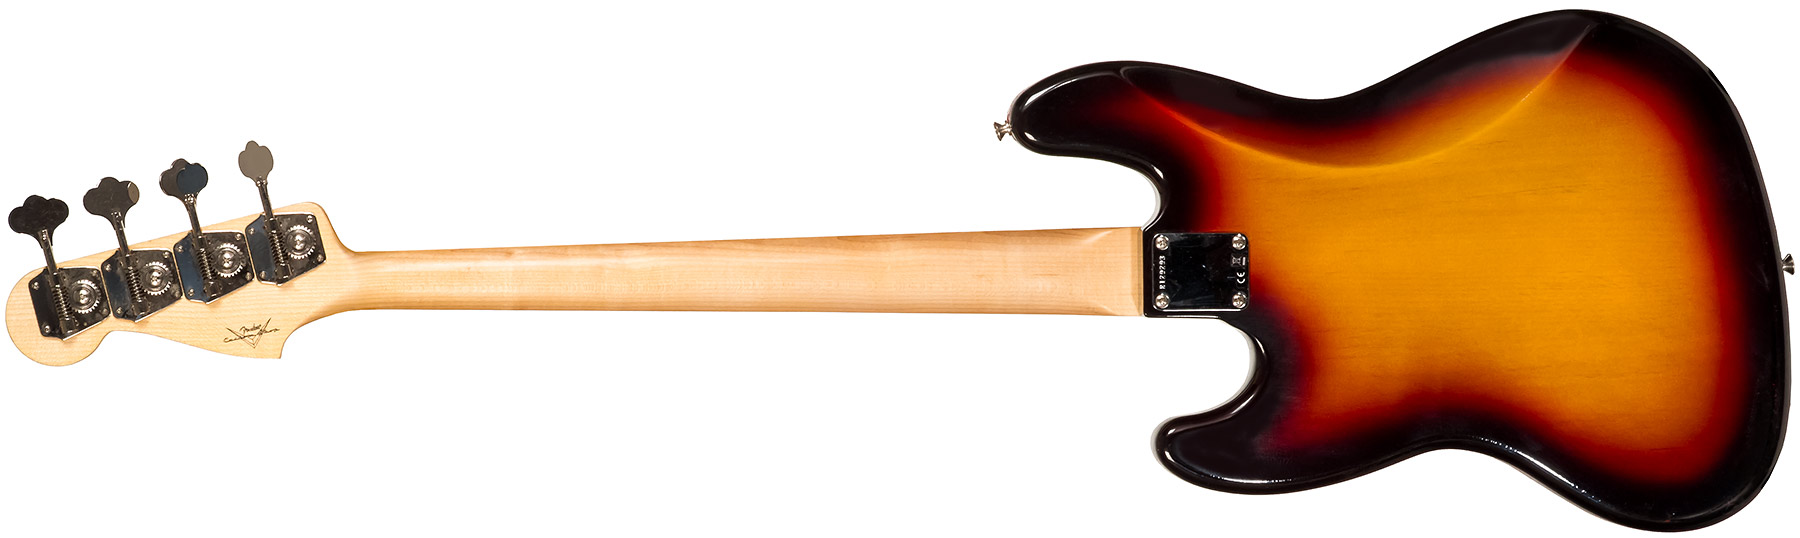 Fender Custom Shop Jazz Bass 1964 Rw #r129293 - Closet Classic 3-color Sunburst - Basse Électrique Solid Body - Variation 1